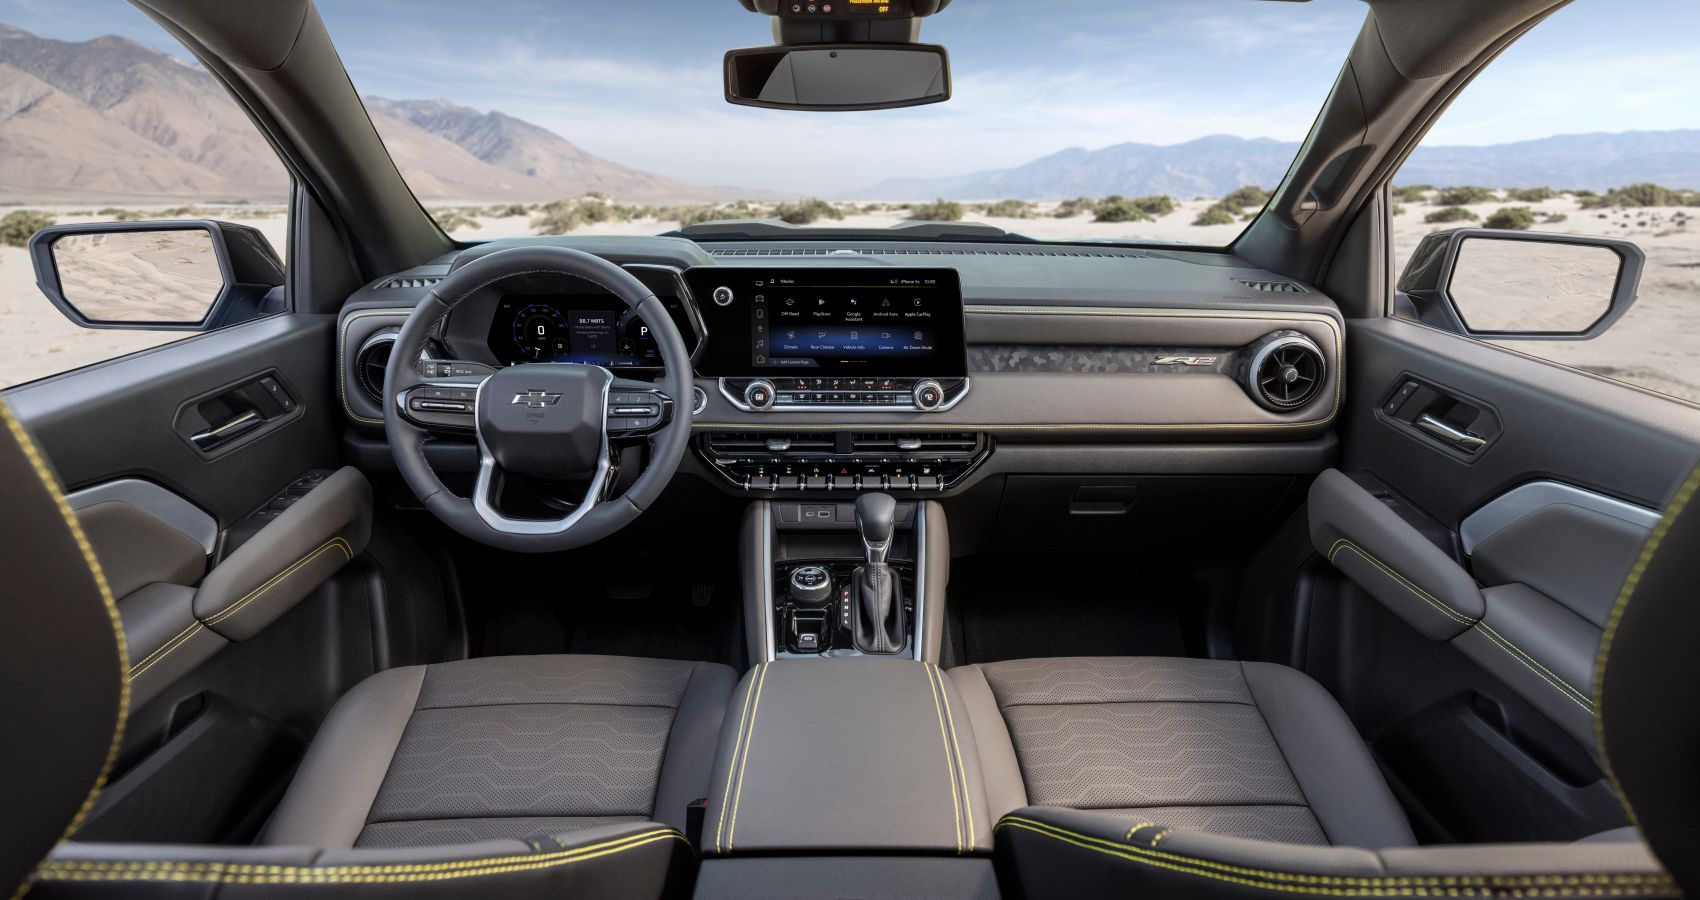 2023 Chevrolet Colorado Interior, view of front